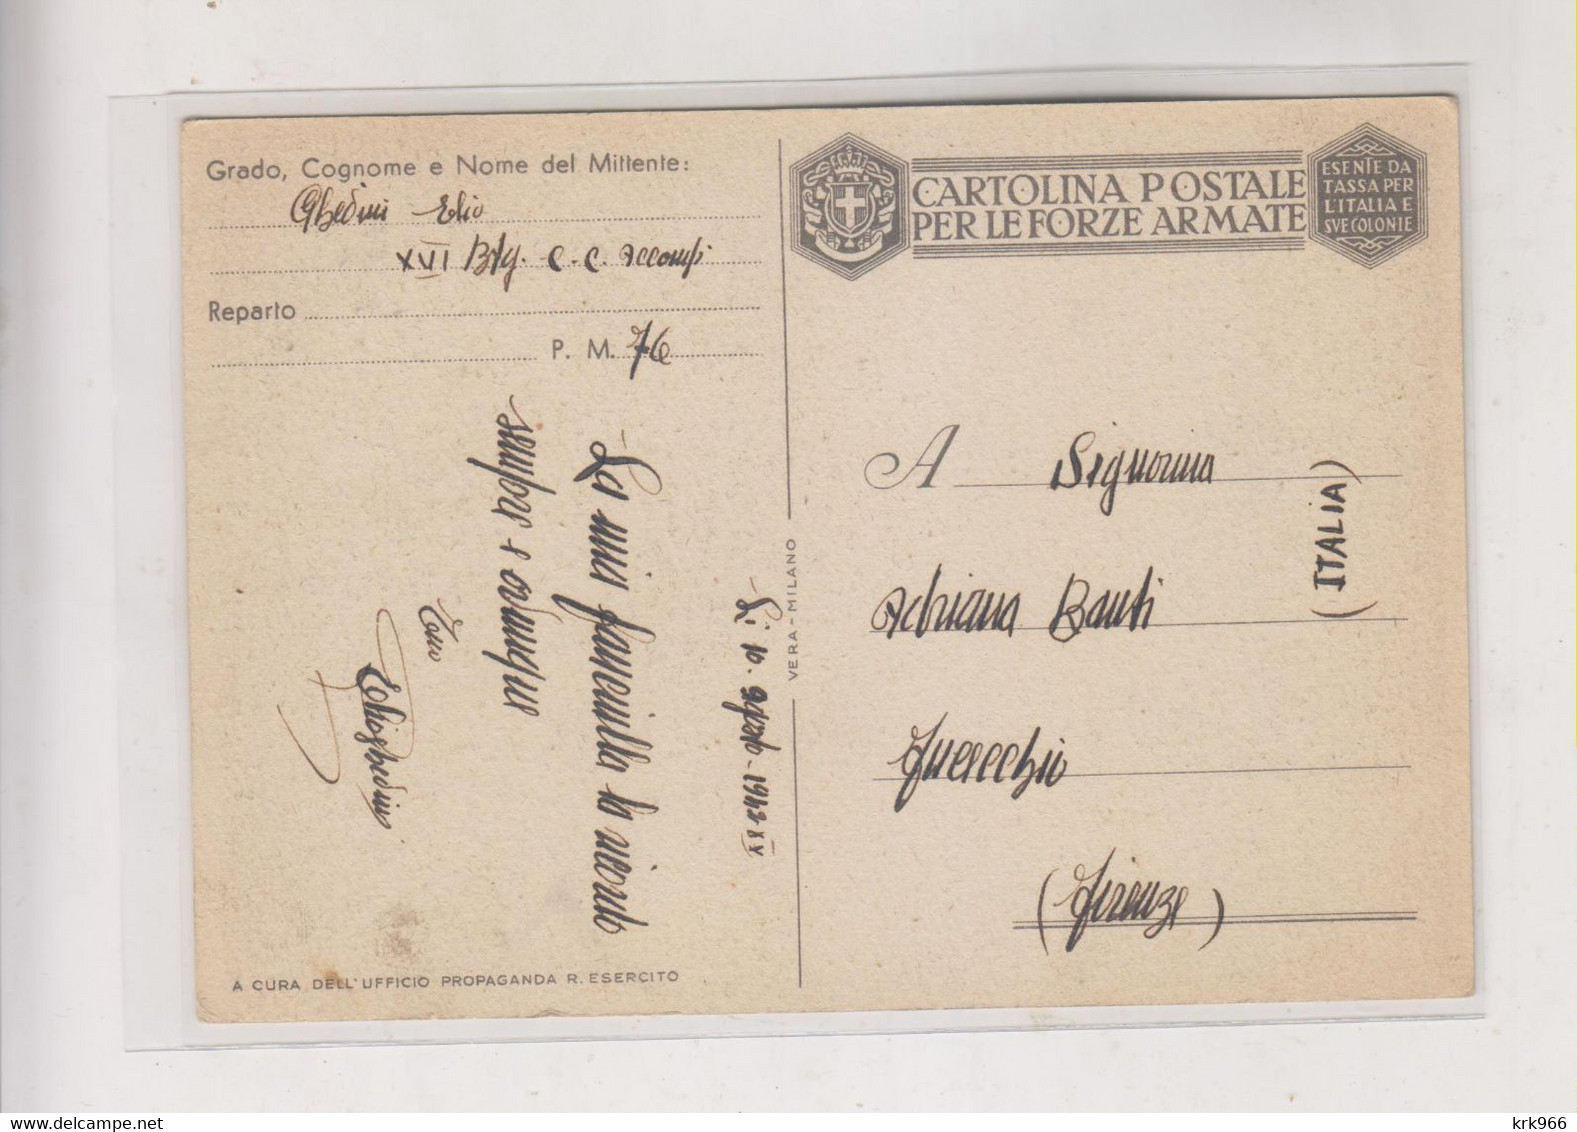 ITALY WW II WAR PROPAGANDA Postcard - Propagande De Guerre